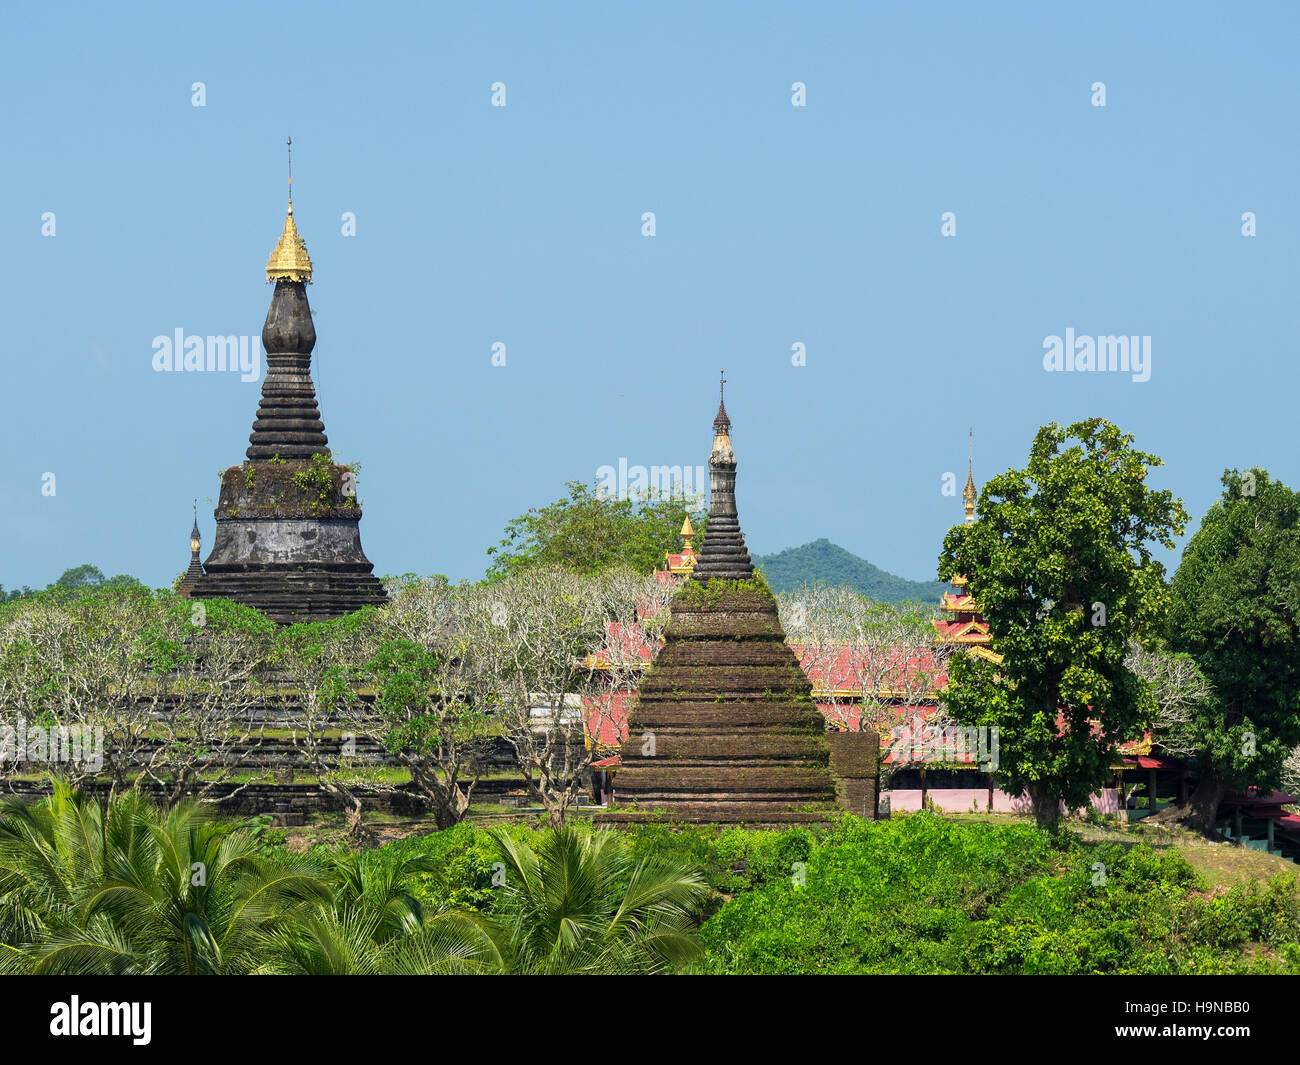 The Zina Man Aung Pagoda in Mrauk U, the Rakhine State of Myanmar. Stock Photo